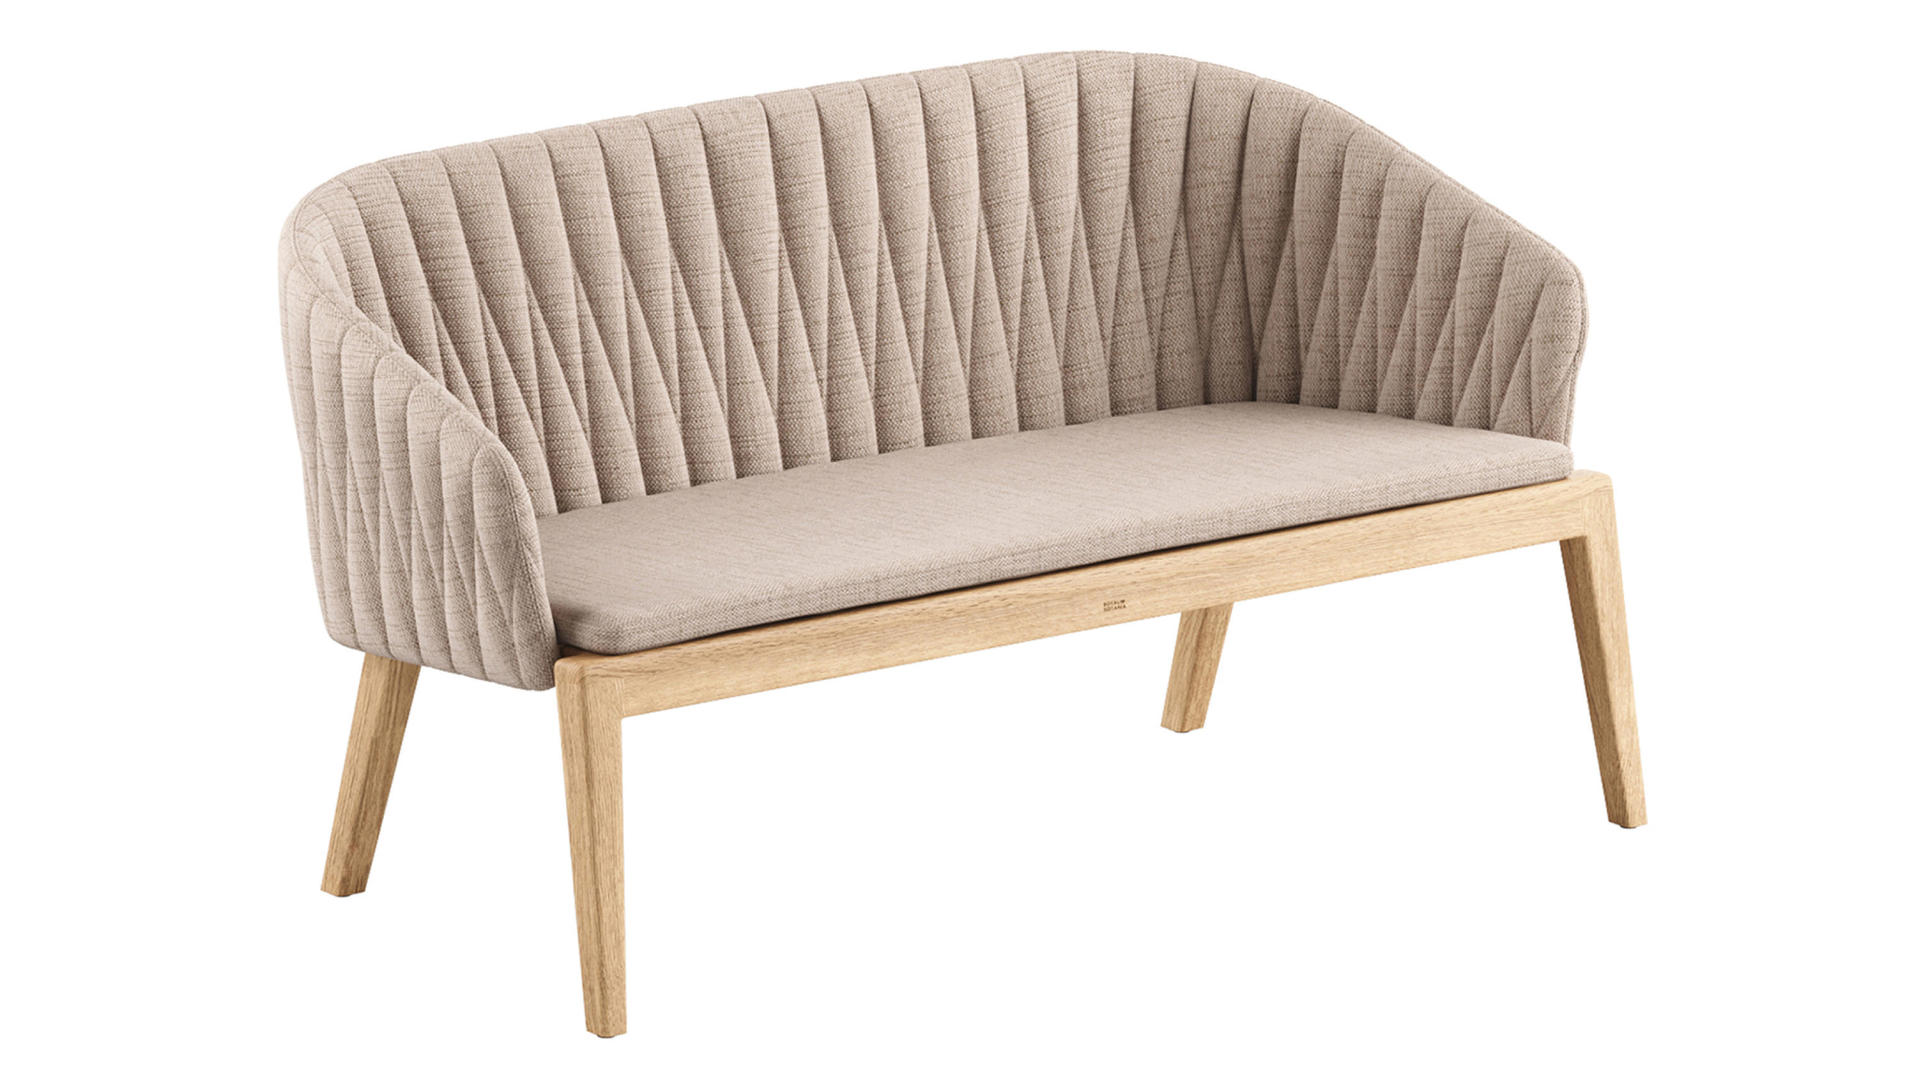 Royal Botania Calypso bench sofa medium bank outdoor HORA Barneveld 5.jpg